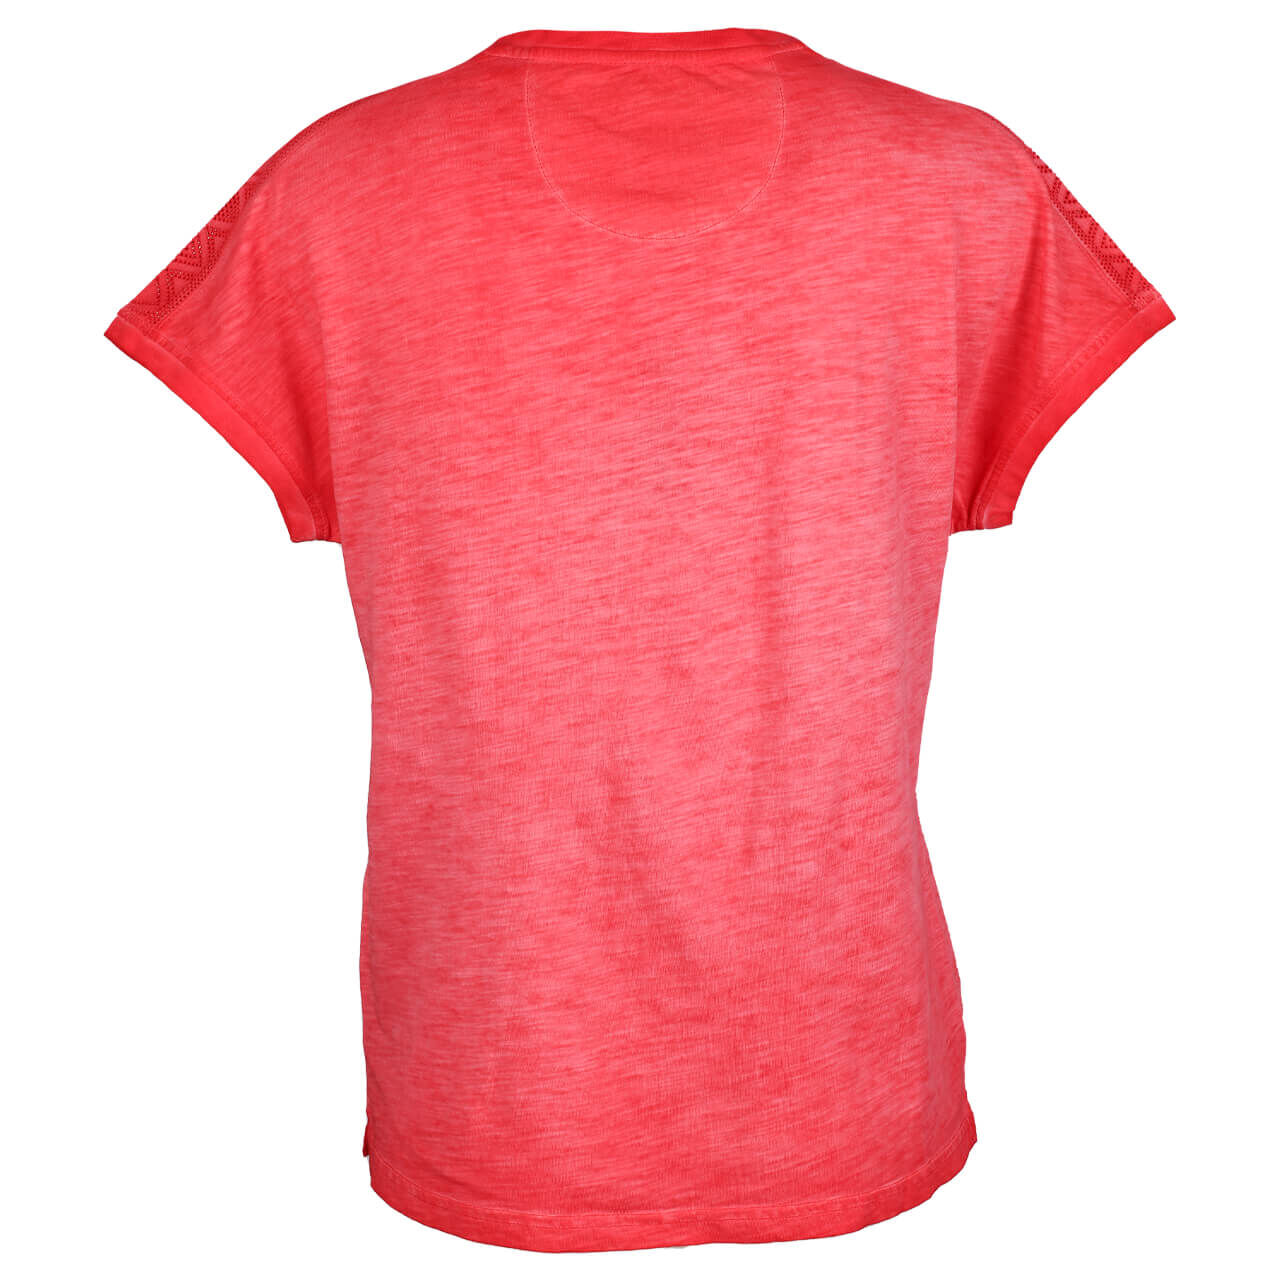 Soquesto Damen T-Shirt lace tomato red